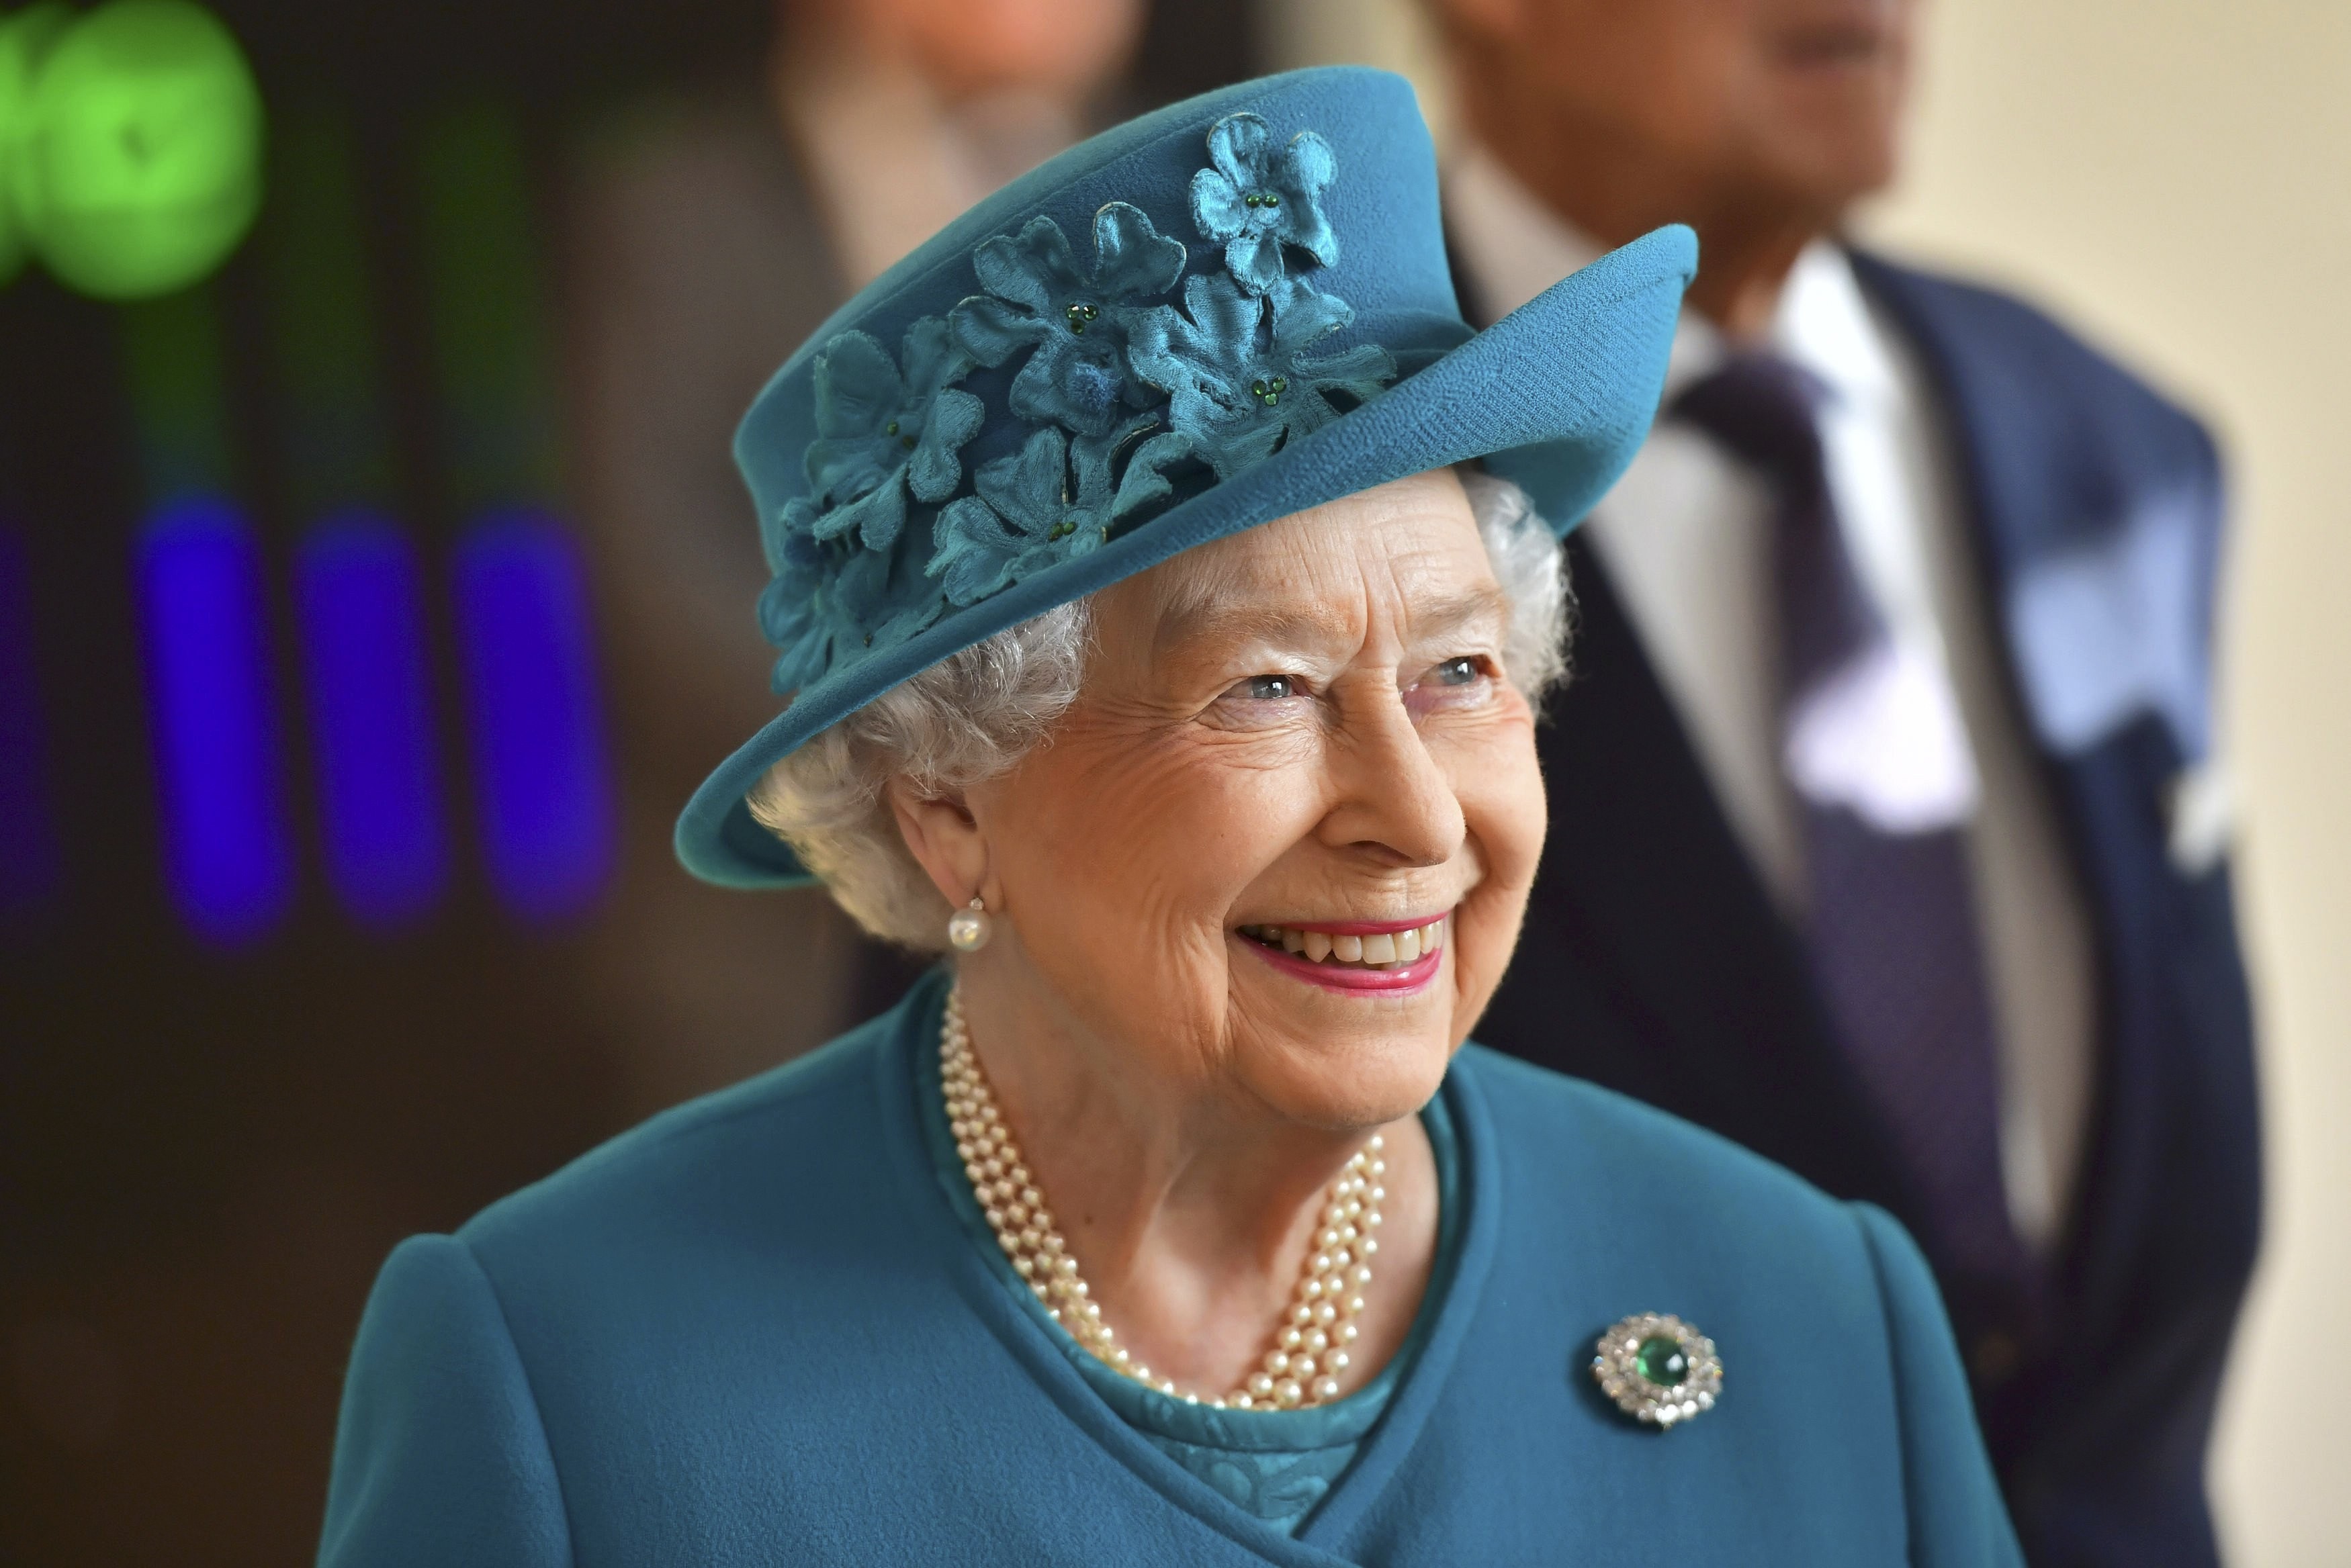 2018伦敦马拉松倒计时 英国女王将充当发令员